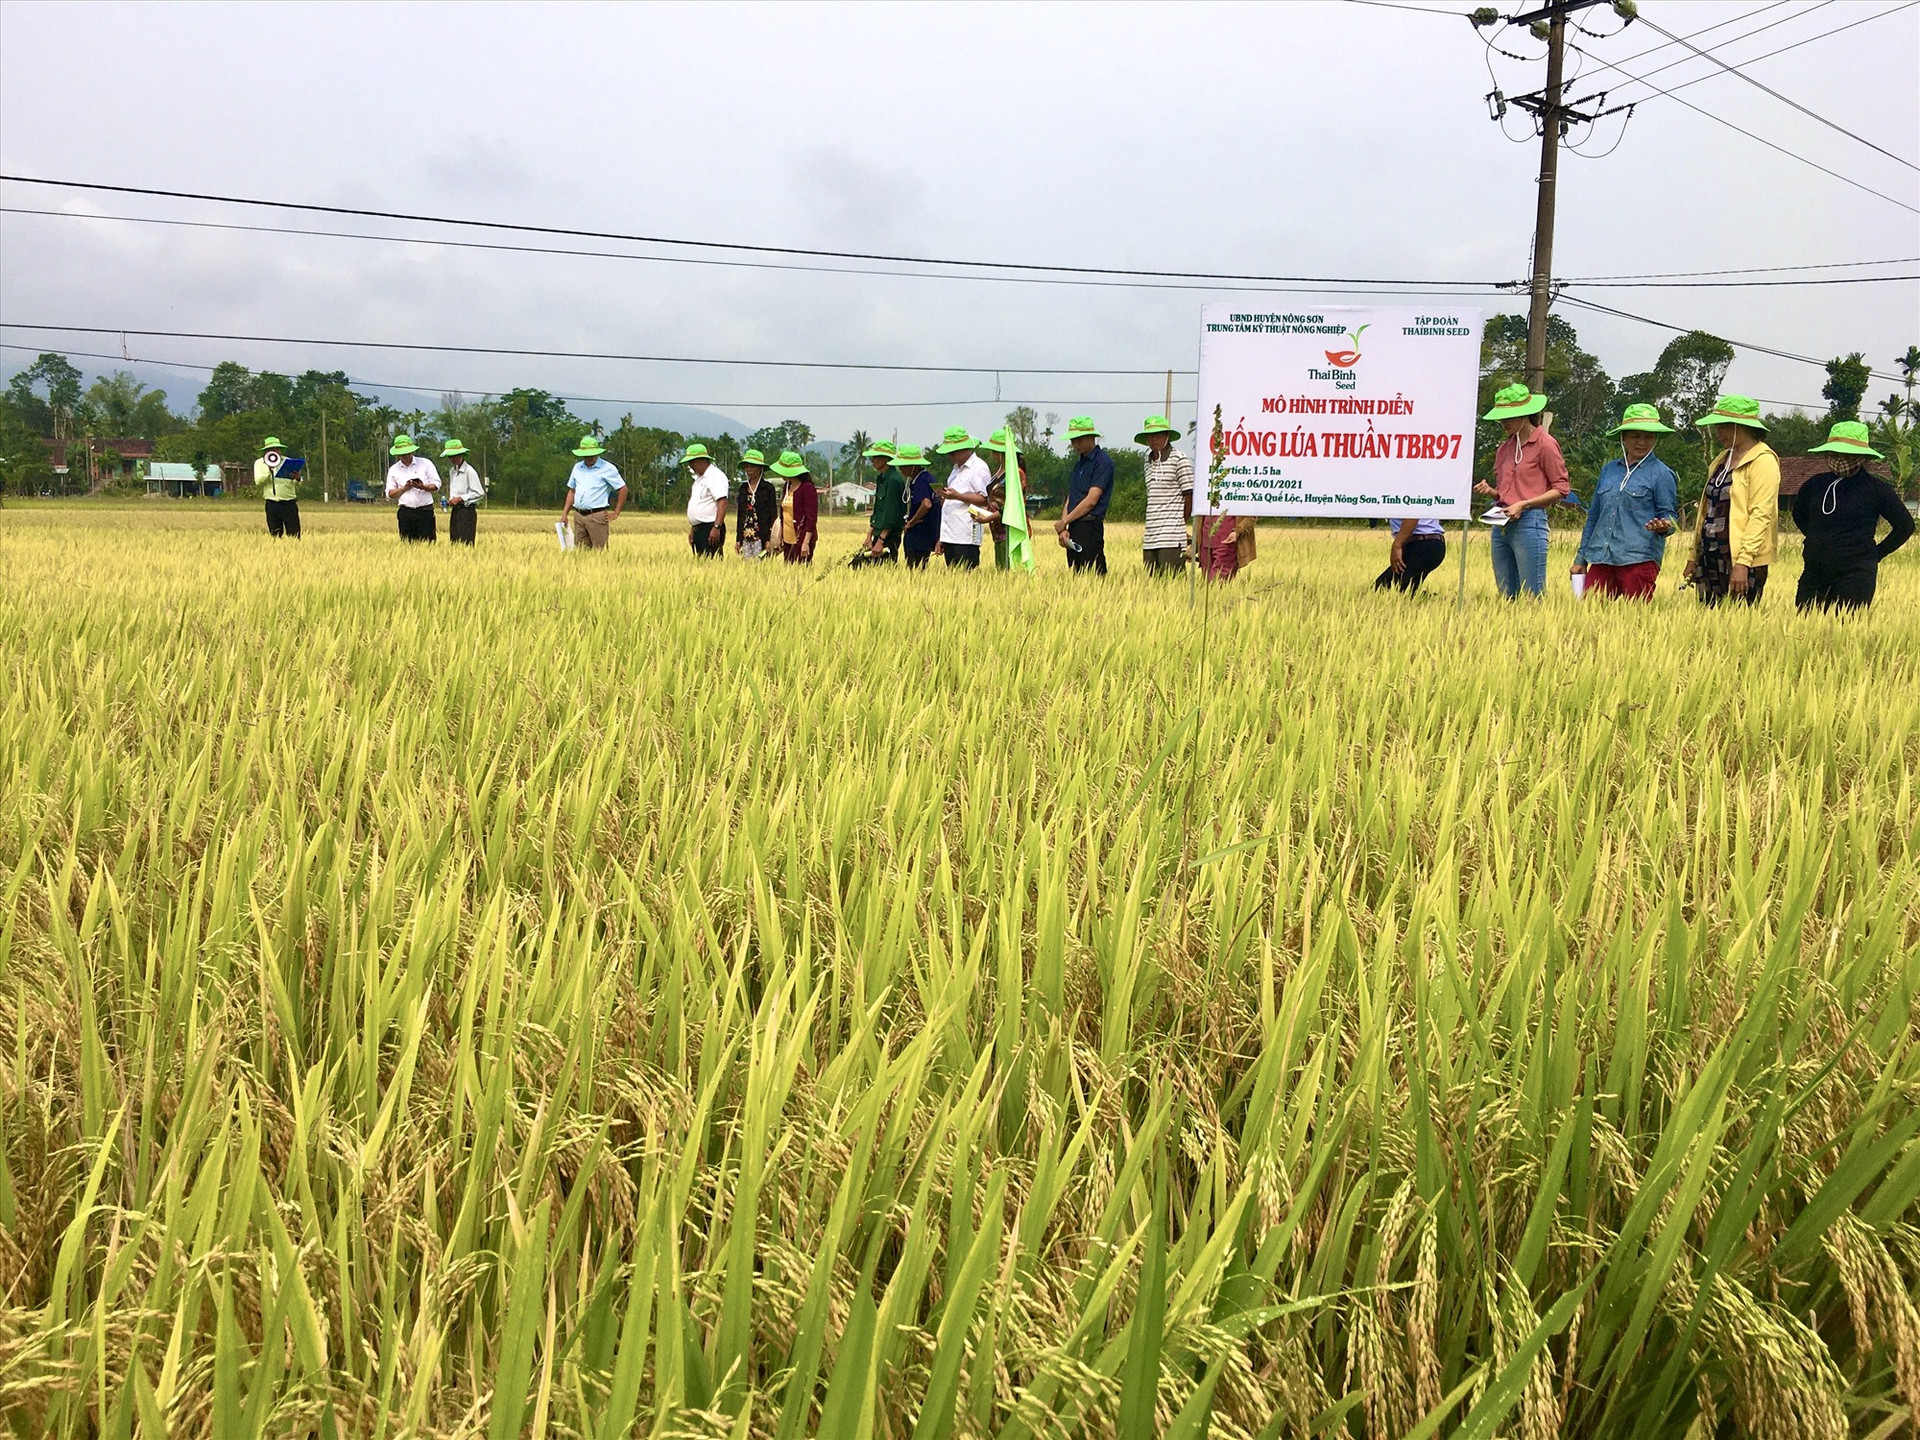 Mô hình khảo nghiệm giống lúa mới TBR97 tại xã Quế Lộc (huyện Nông Sơn) cho năng suất cao. Ảnh: LÊ THÔNG